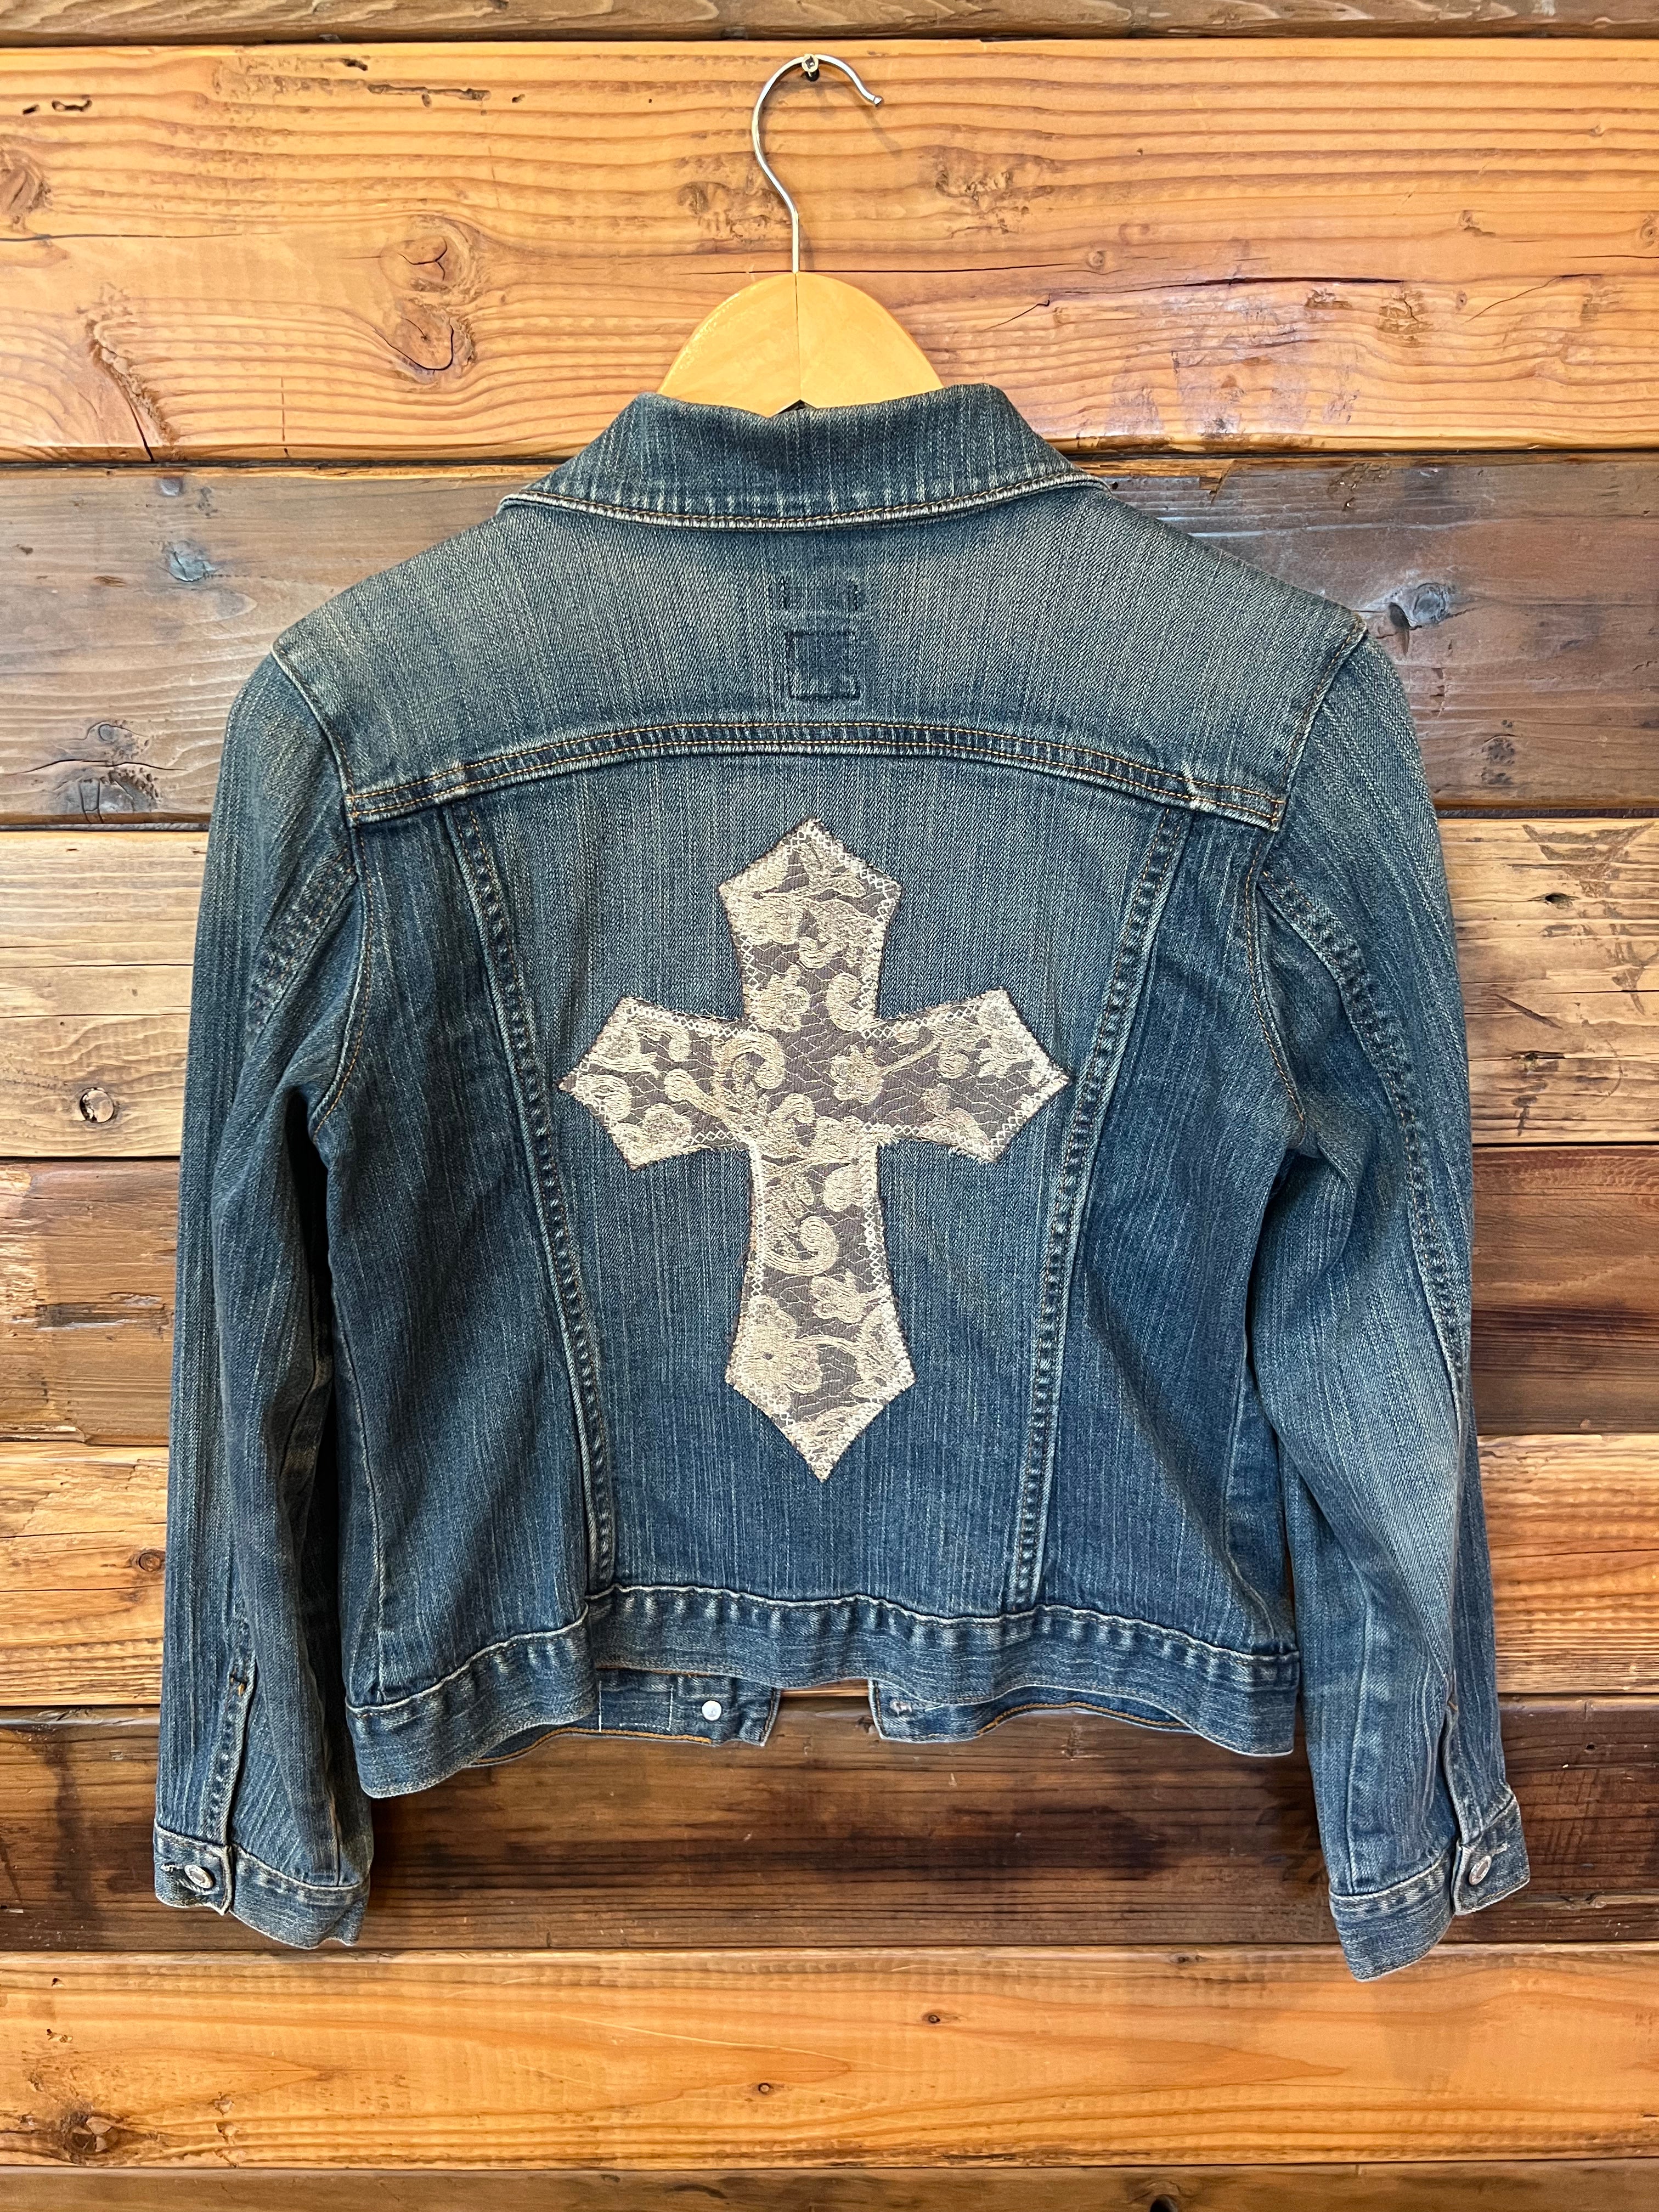 One of a Kind vintage Gap jean jacket featuring MadAndie custom cross